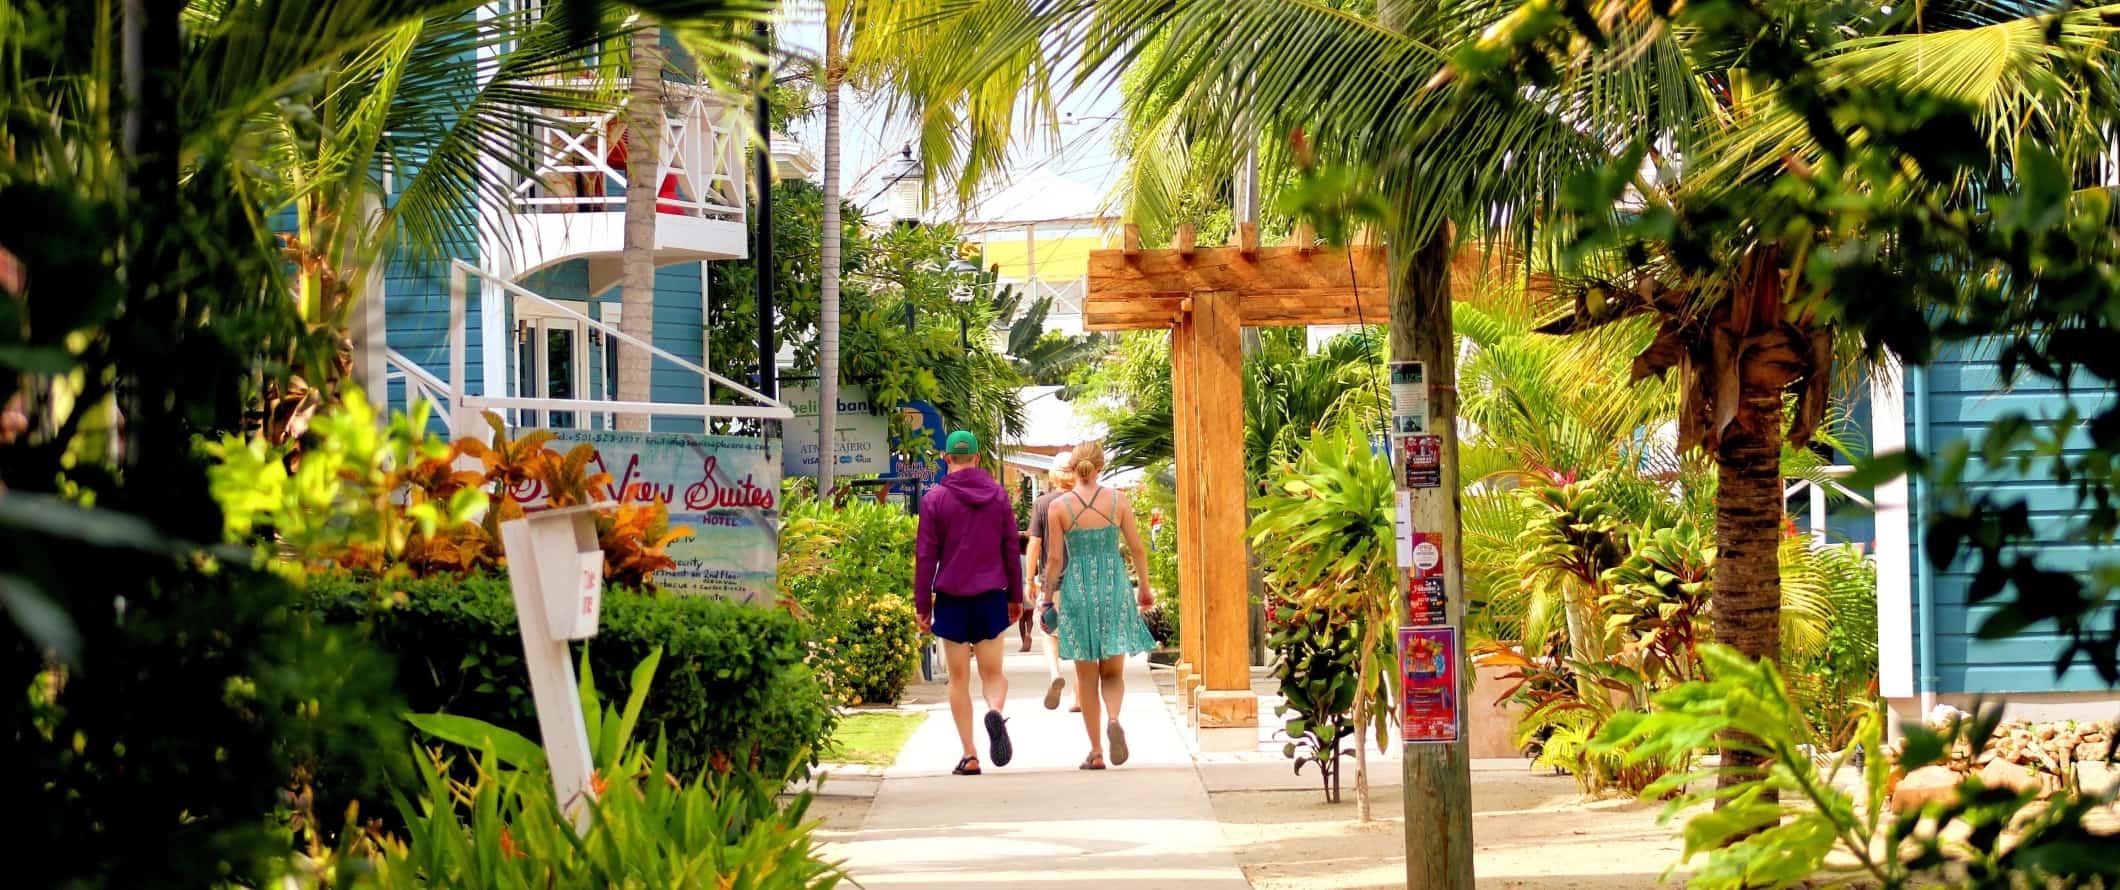 Os turistas vão ao longo da calçada sentados com palmeiras exuberantes, em Platensia, Belize